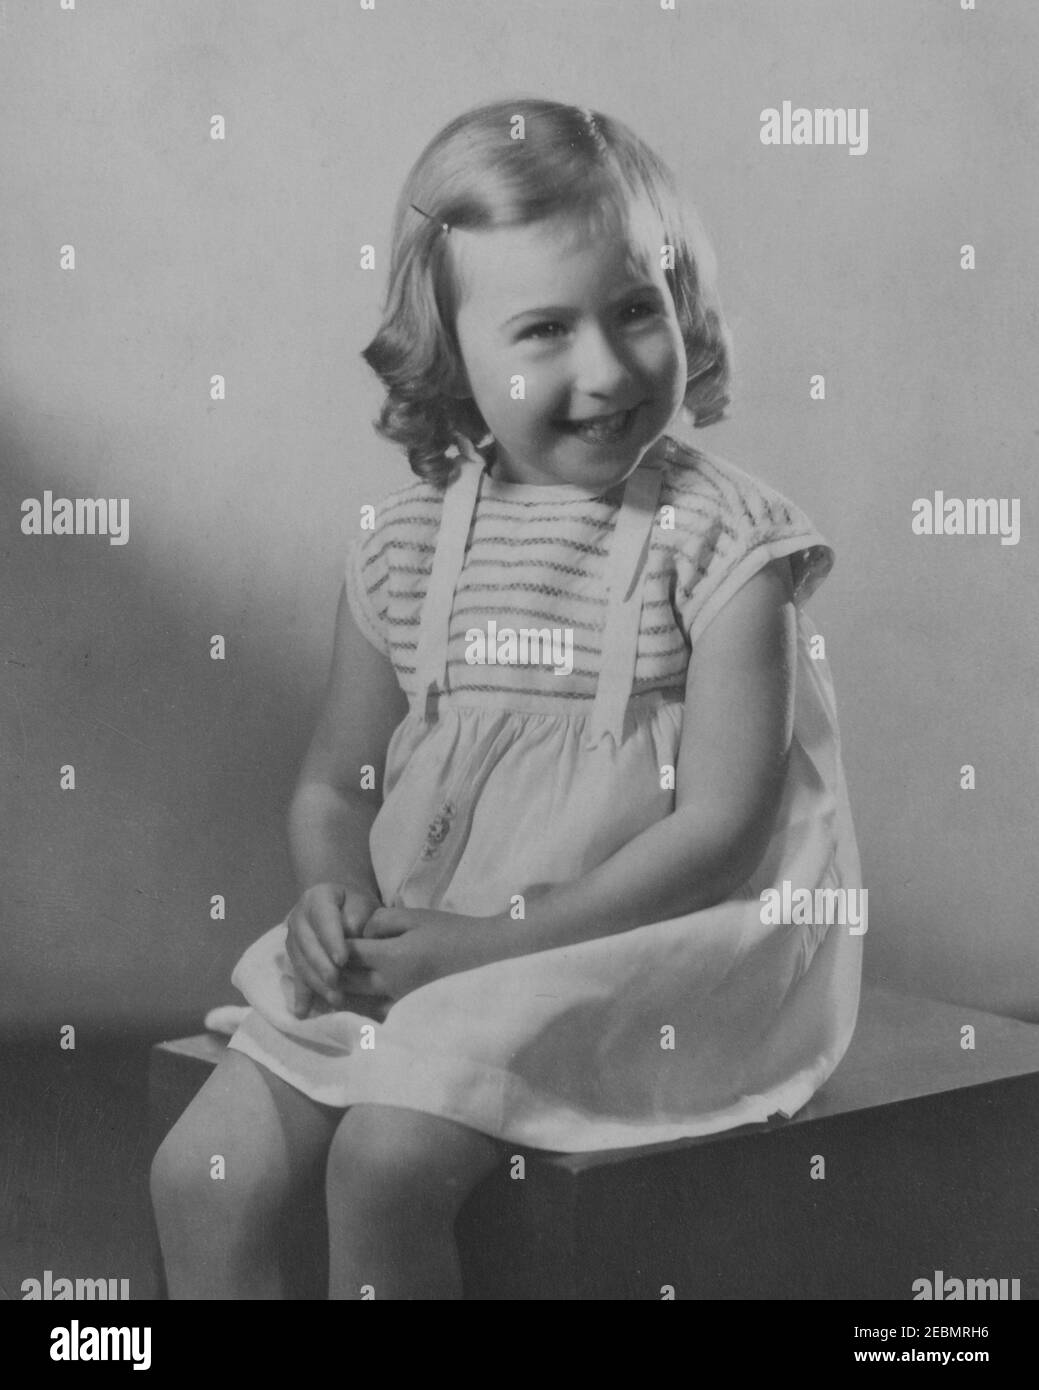 Fotografia monocromatica d'epoca di una giovane ragazza caucasica con anelli, risalente all'epoca edoardiana degli anni '20. Foto Stock